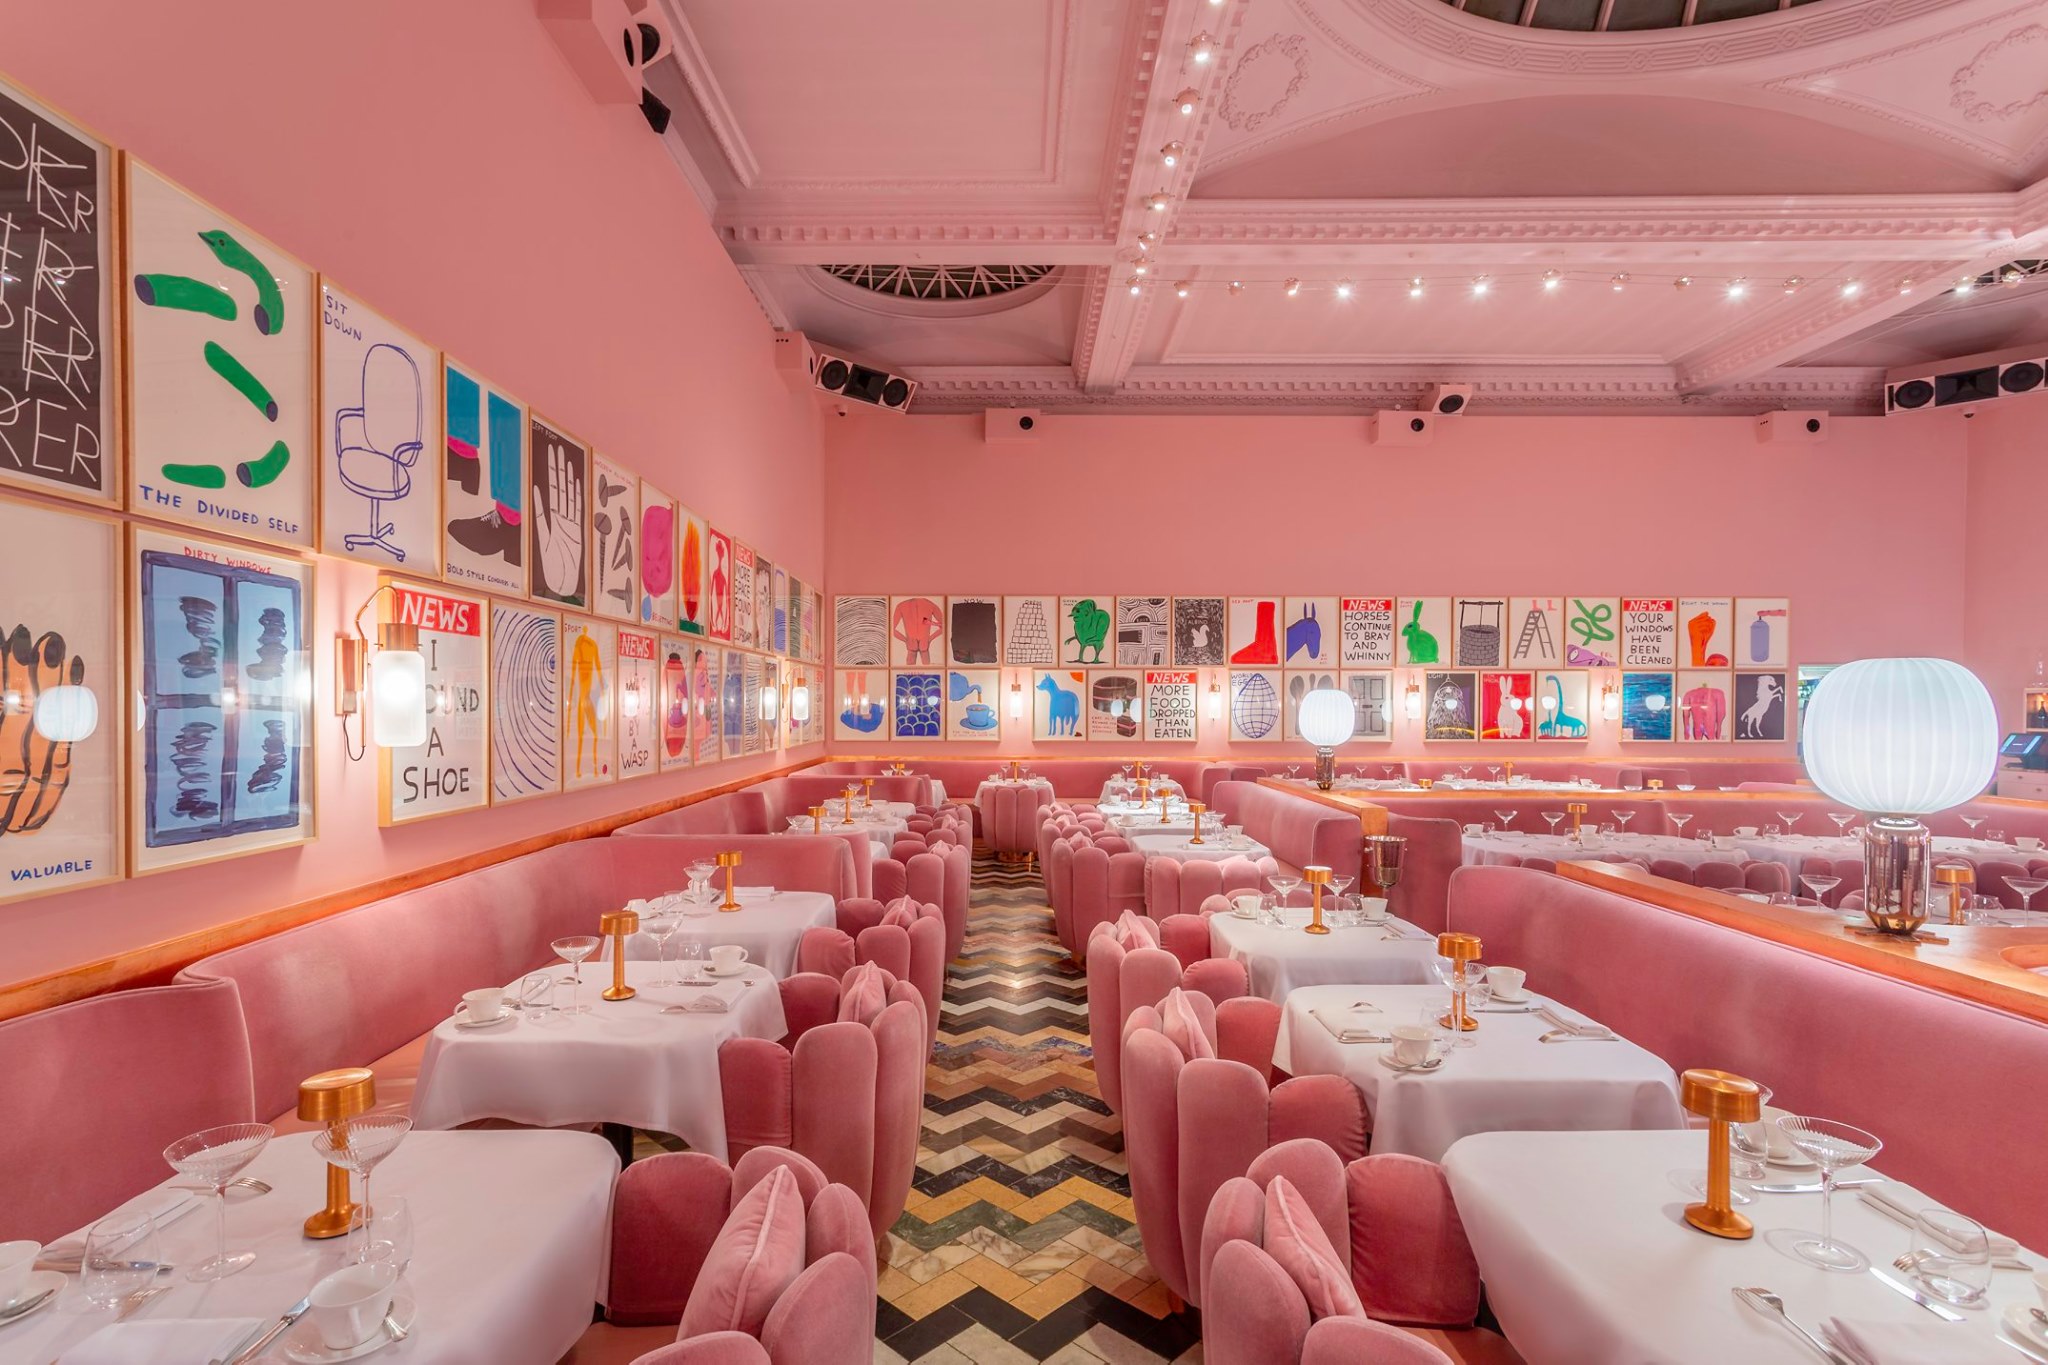 Gli interni di The Gallery nell'iconico arredamento total pink, ora radicalmente cambiato